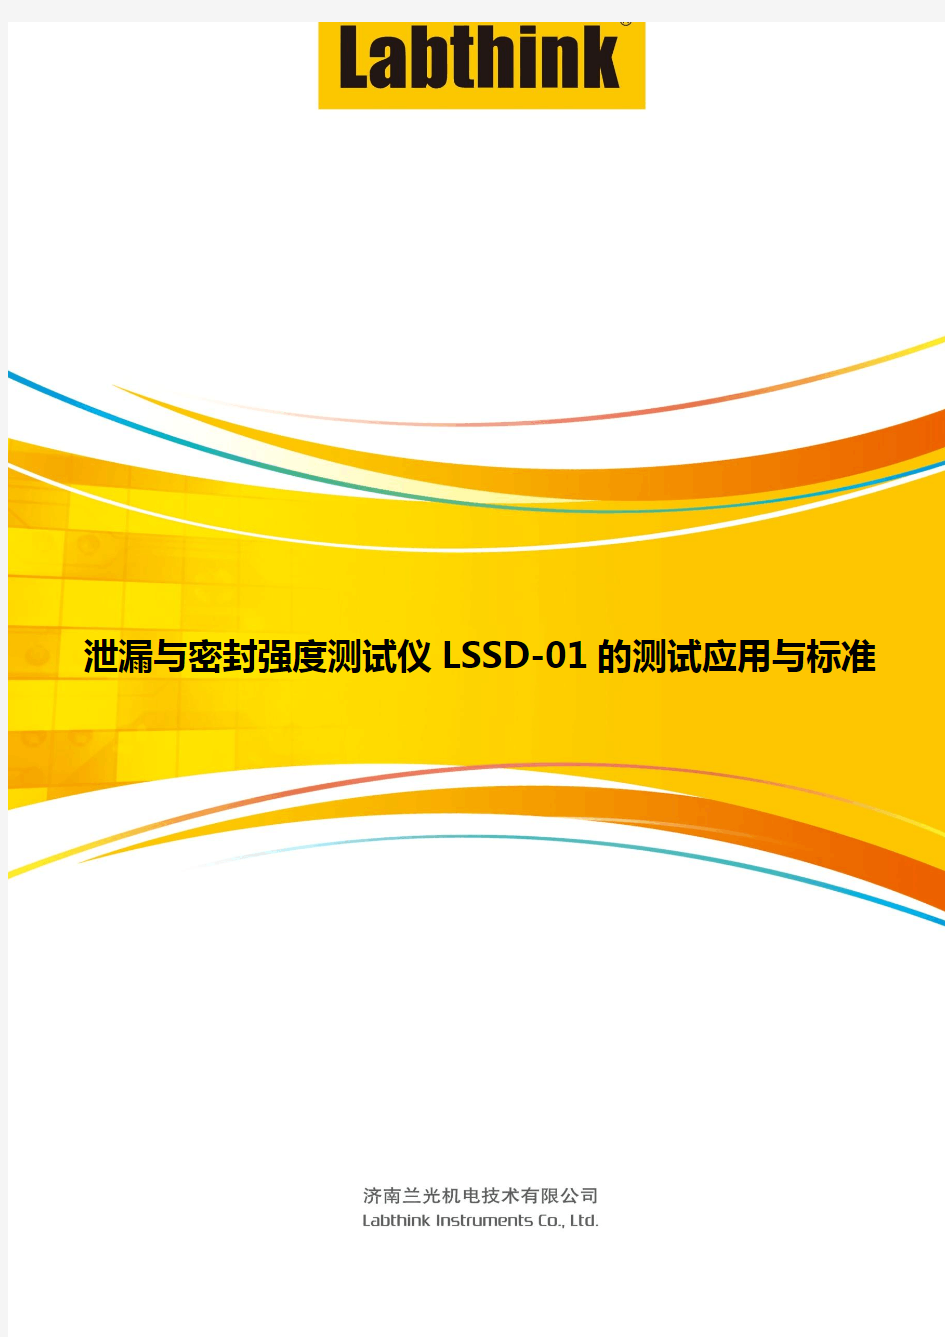 泄漏与密封强度测试仪LSSD-01的测试应用与标准